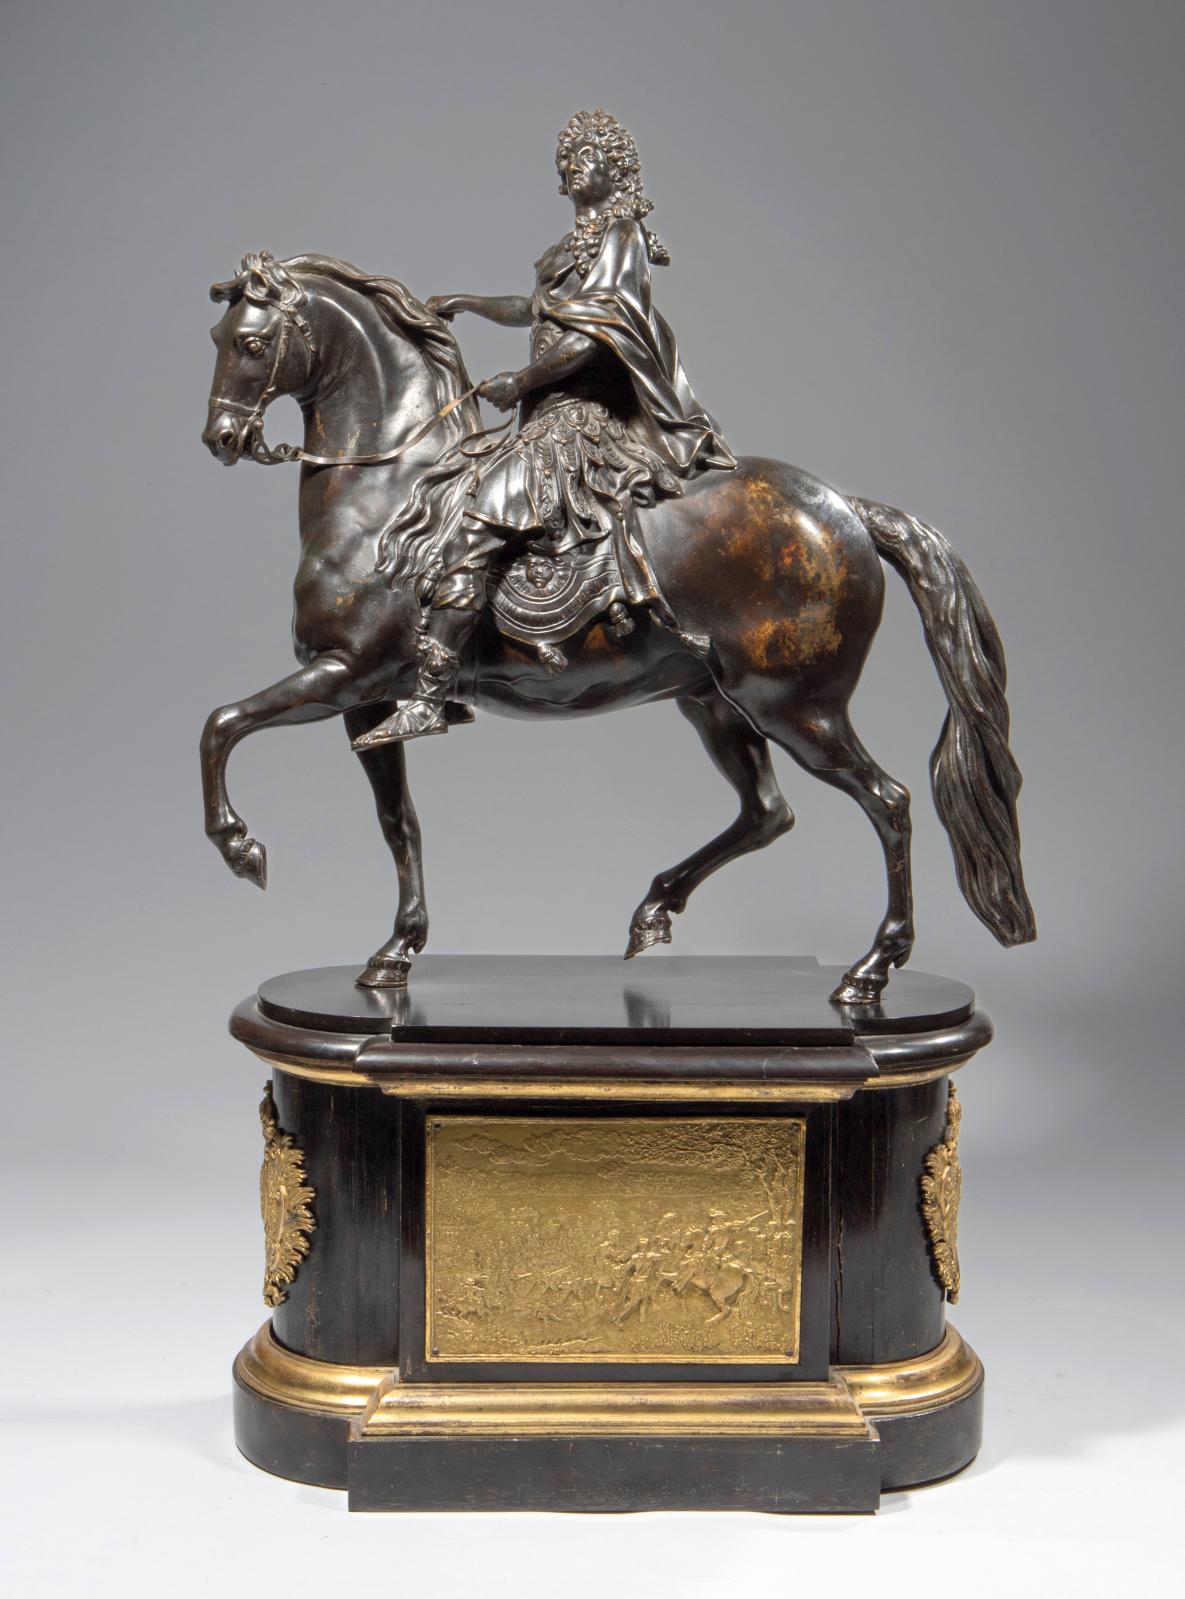 Martin Van den Bogaert, dit Desjardins (1637-1694), Louis XIV à cheval, statuette équestre en bronze à patine brune, vers 1690, 43 x 39 cm